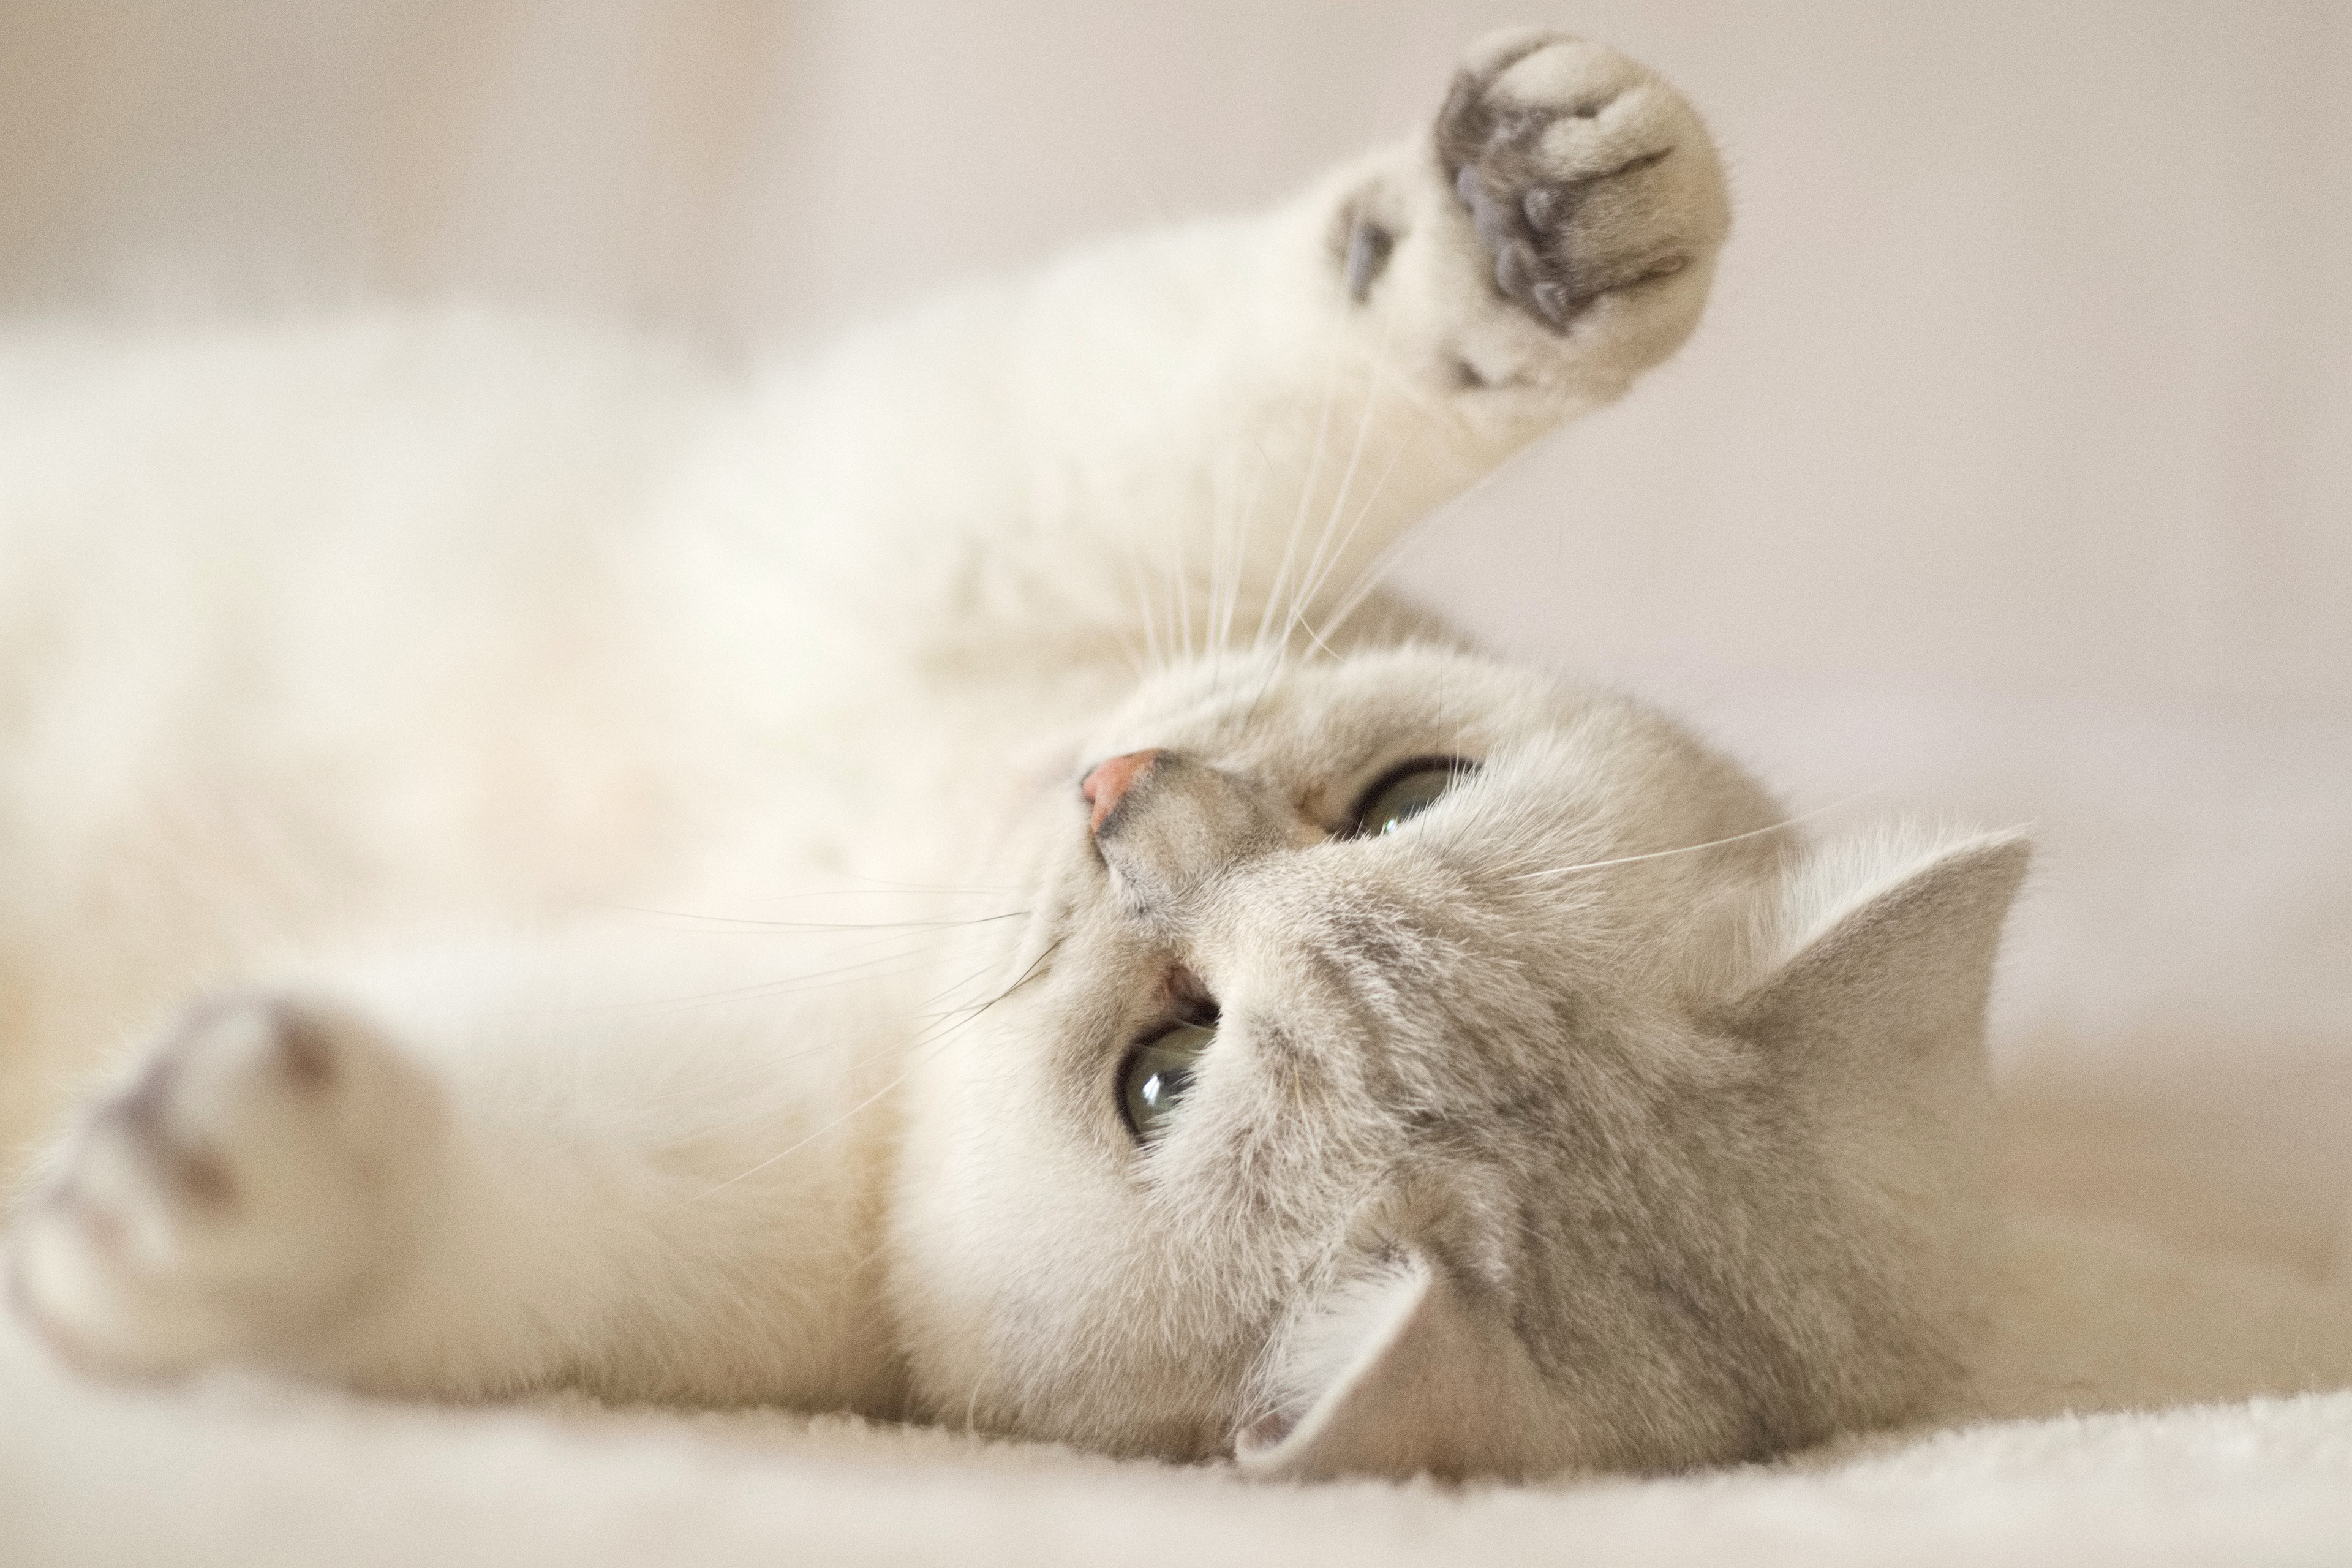 جالب ترین عکس HD گربه بامزه سفید در حال بازی کردن رو تخت